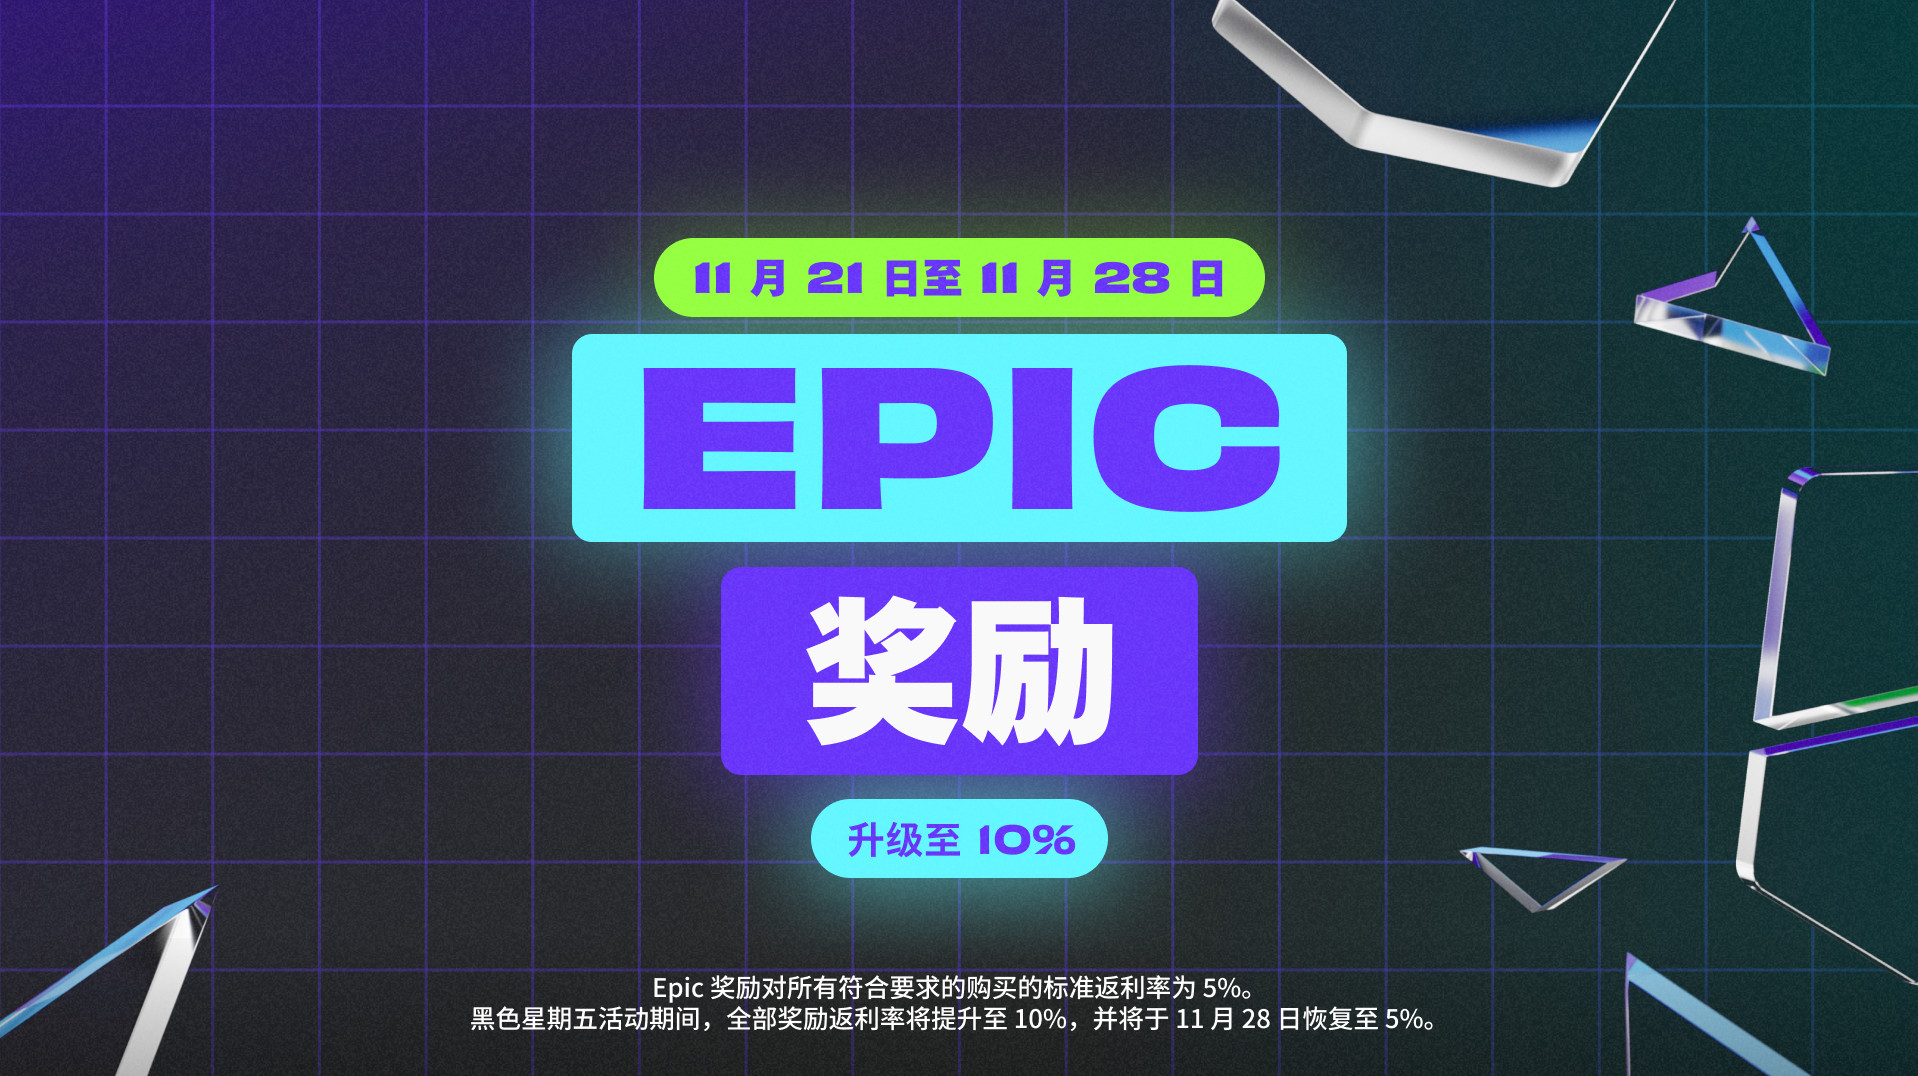 Epic开启黑五特卖：超106元便可享受6.7折优惠